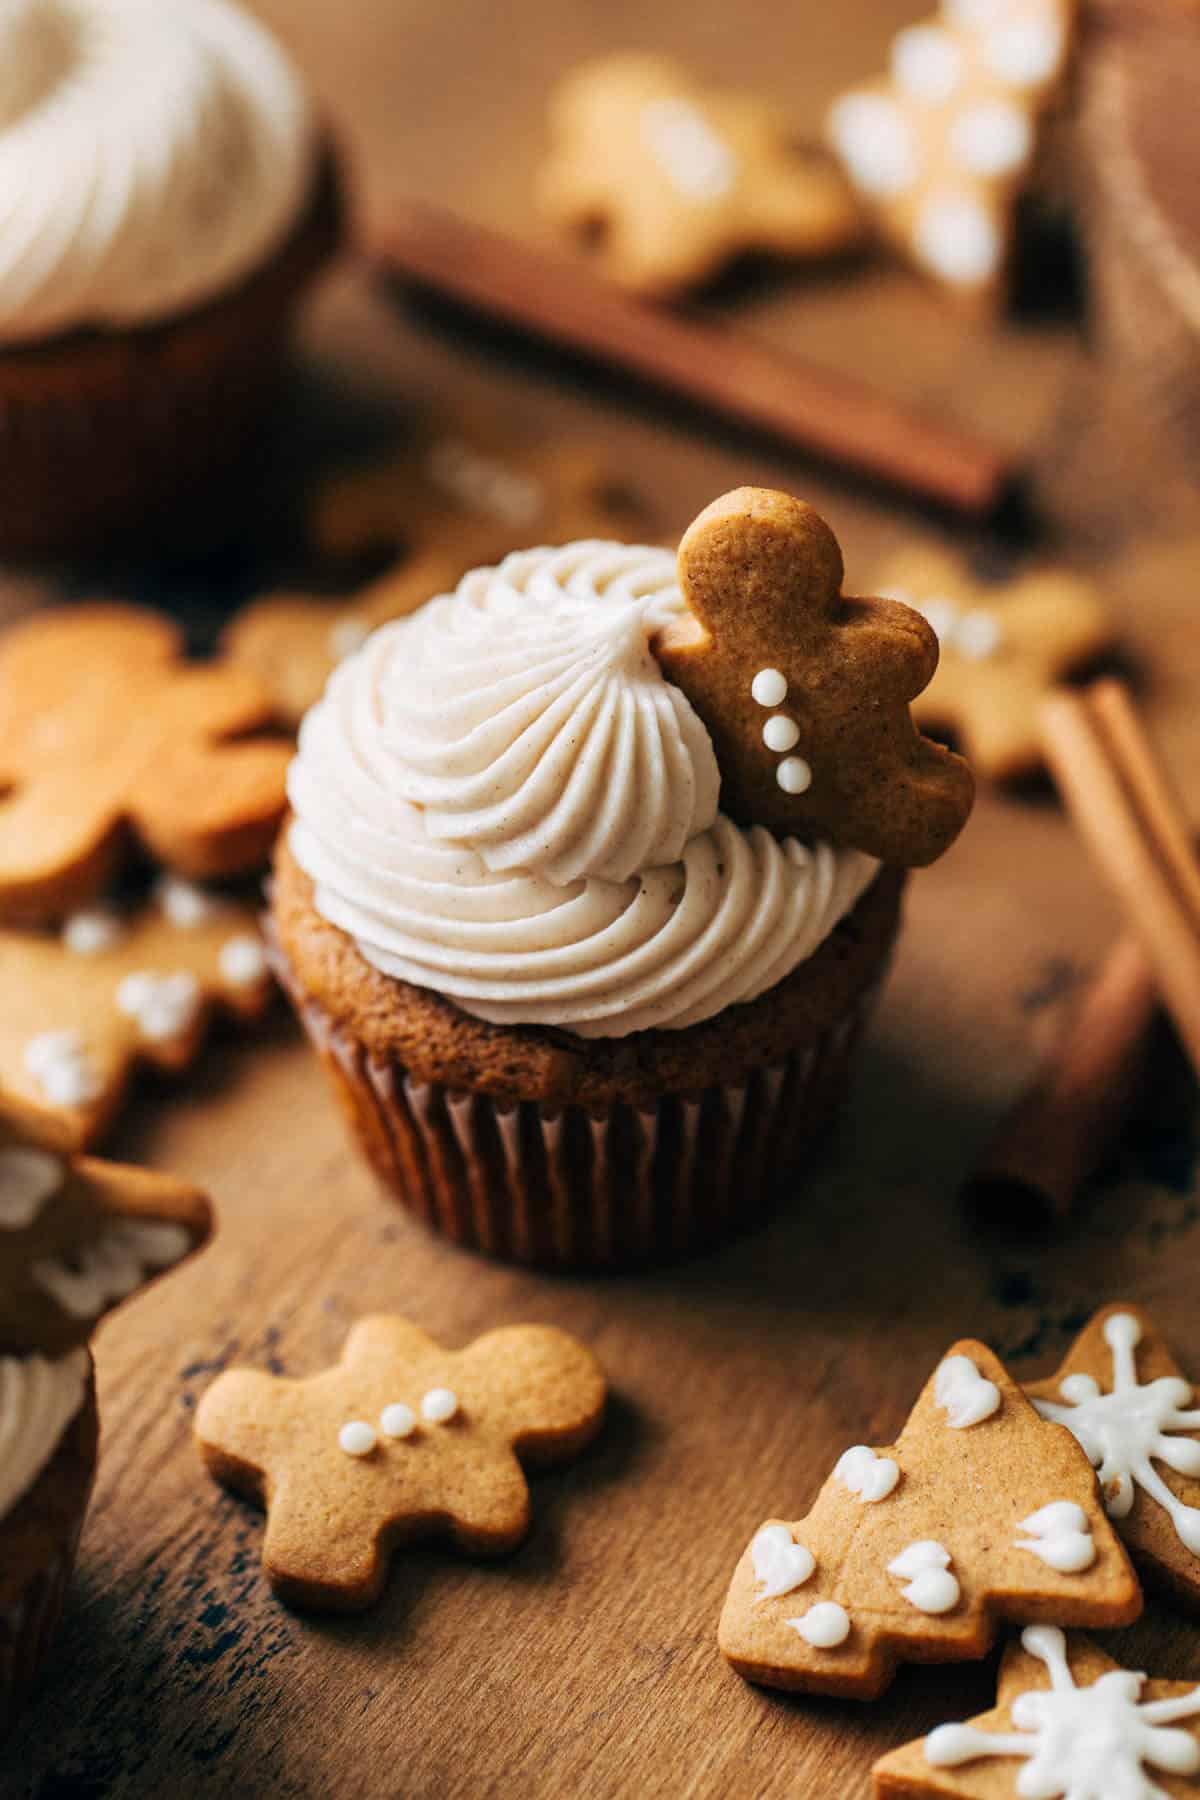 https://butternutbakeryblog.com/wp-content/uploads/2018/12/gingerbread-cupcake.jpg